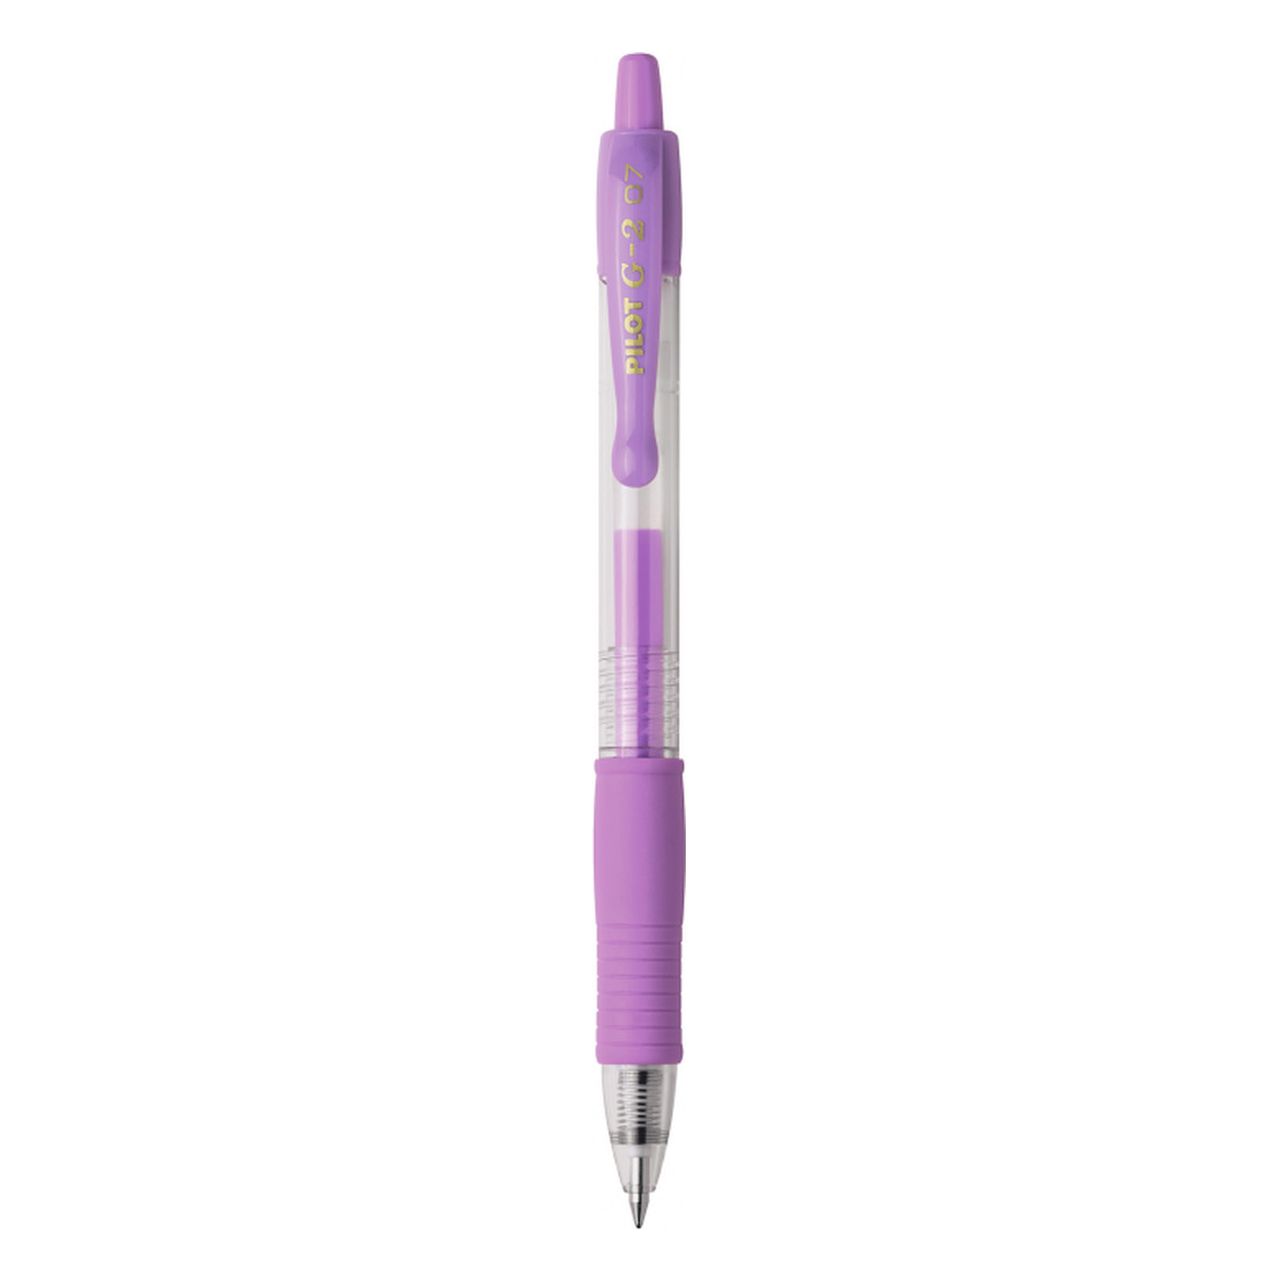 Pilot Gel Pen in Pastel Violet